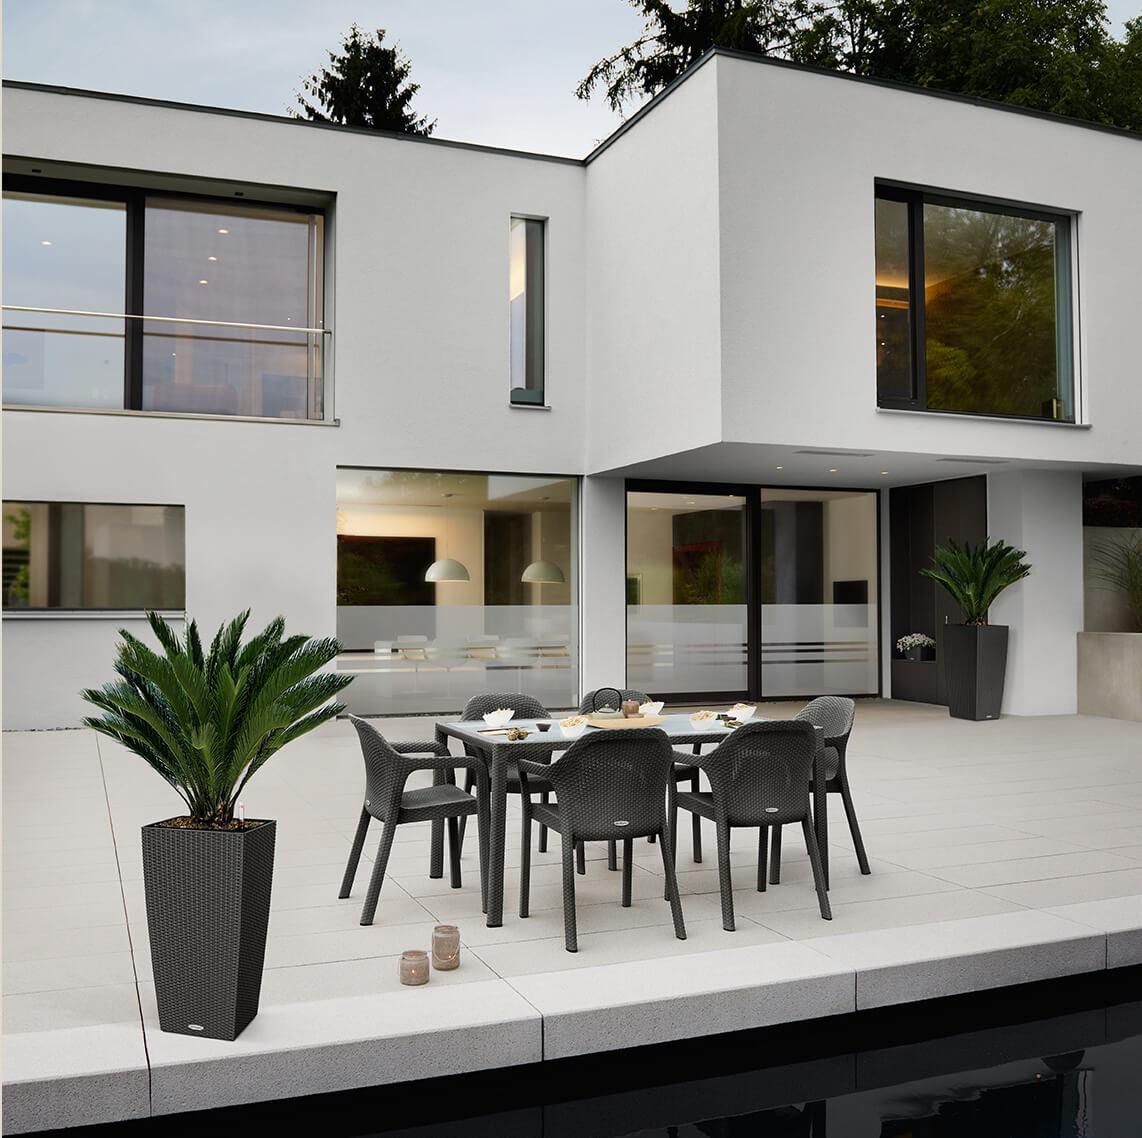 'Villa moderne de style Bauhaus au crépuscule. Sur la terrasse